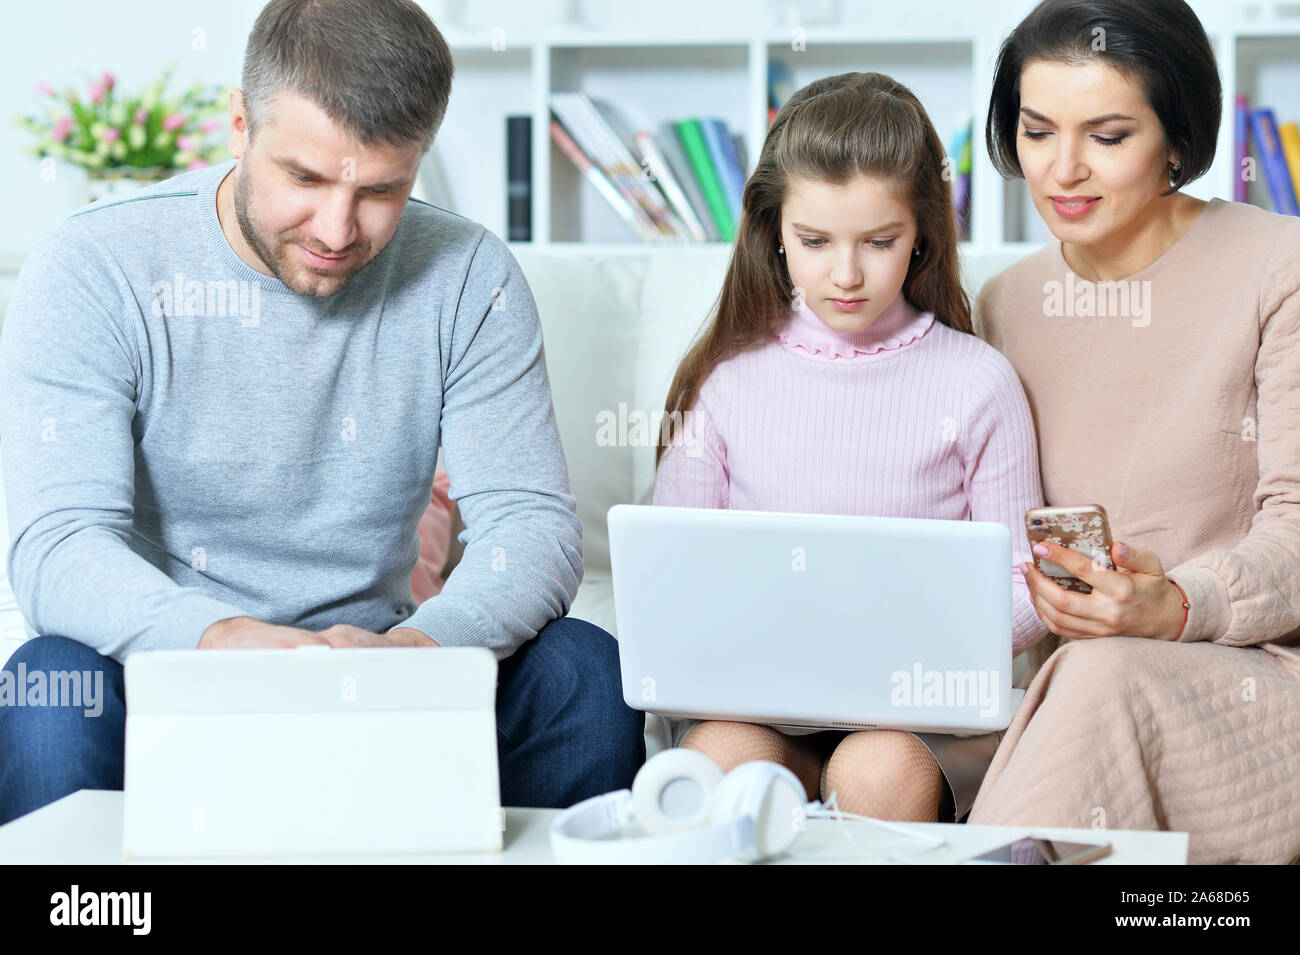 Heureux parents et sa fille à l'aide d'appareils numériques Banque D'Images